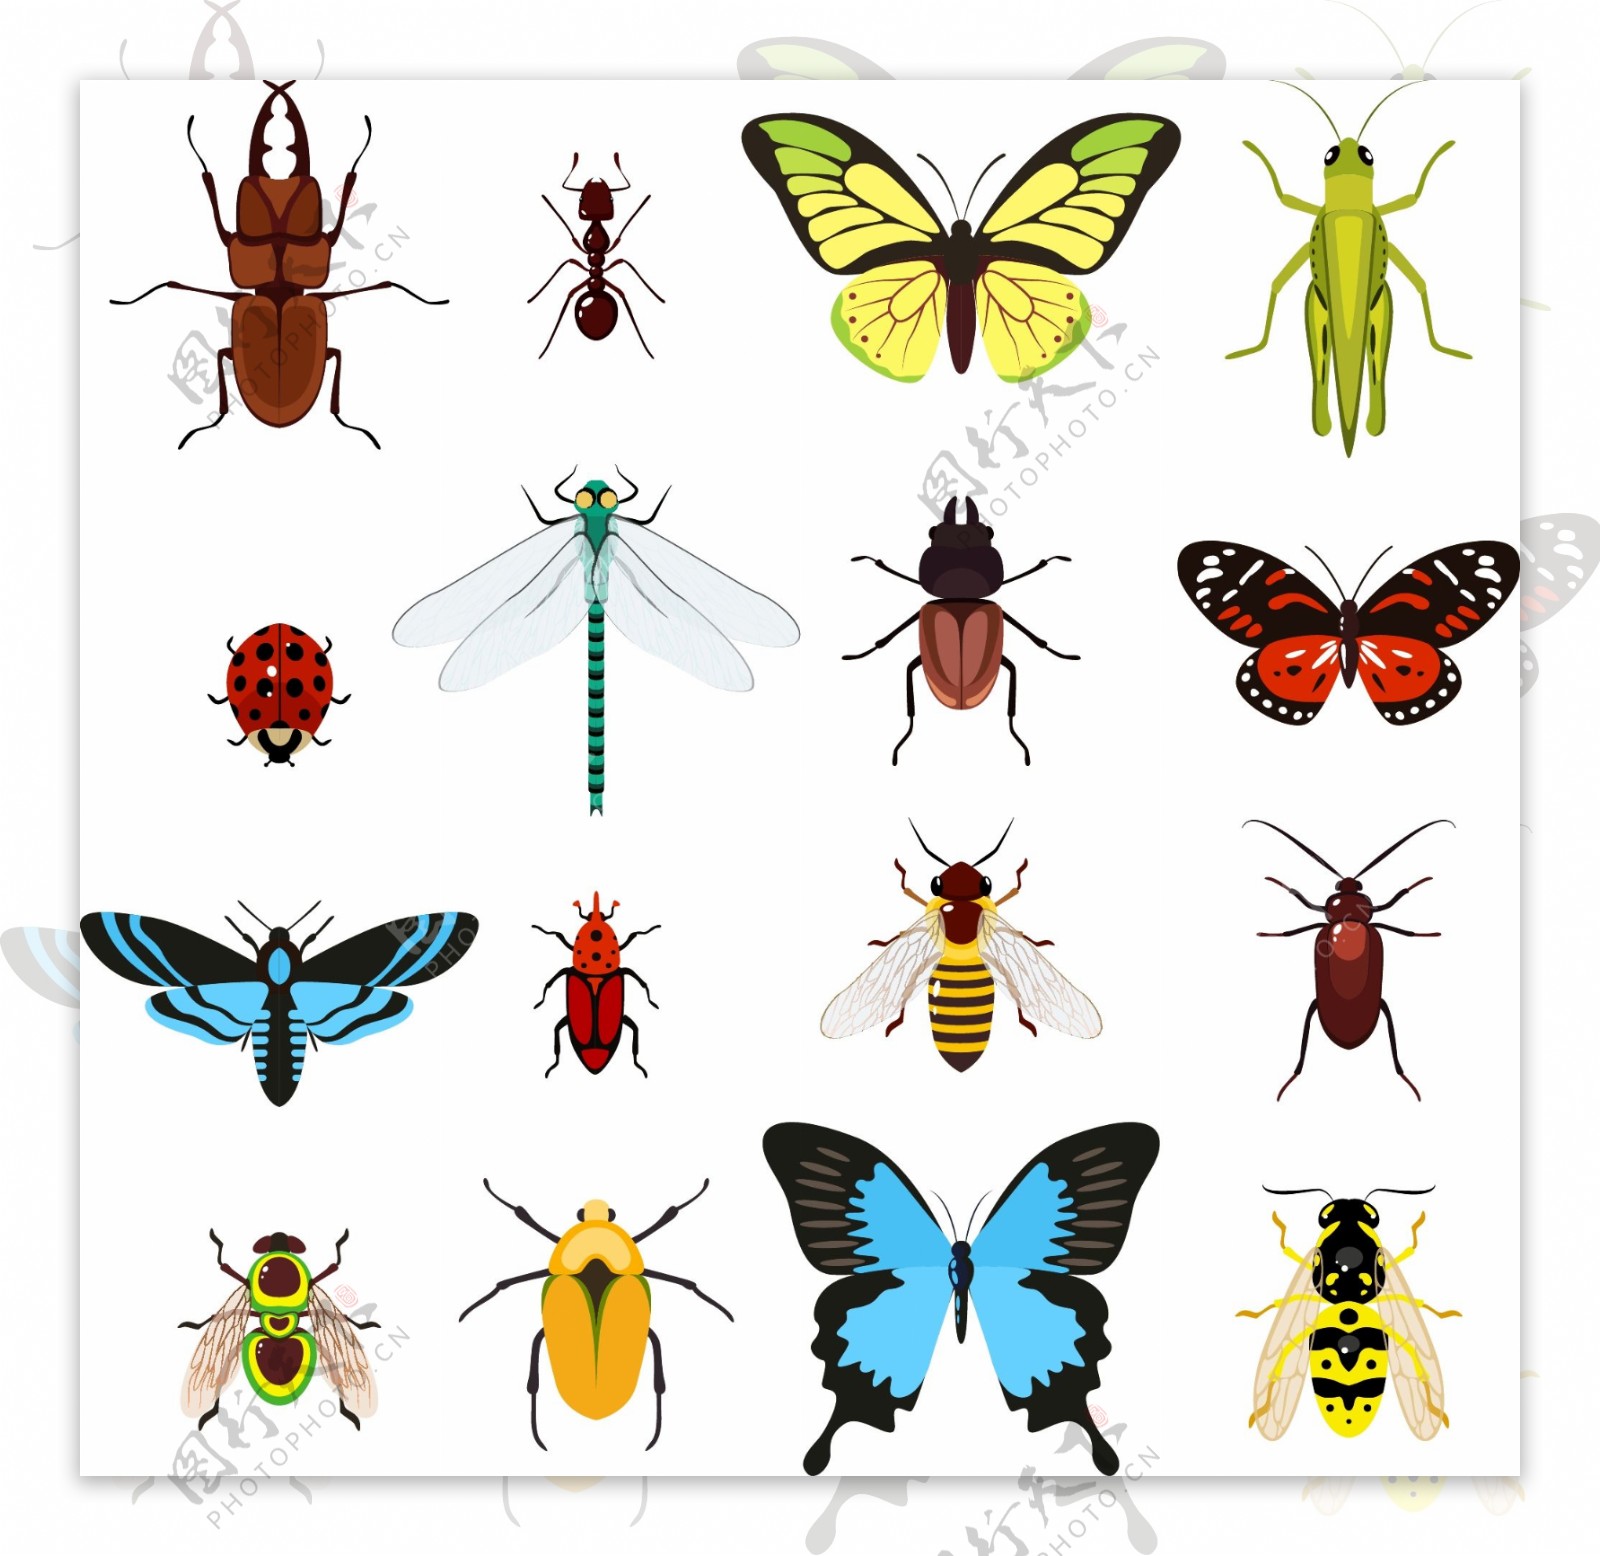 你认识多少种昆虫？1200多种昆虫，开启孩子昆虫探索之旅 - 知乎